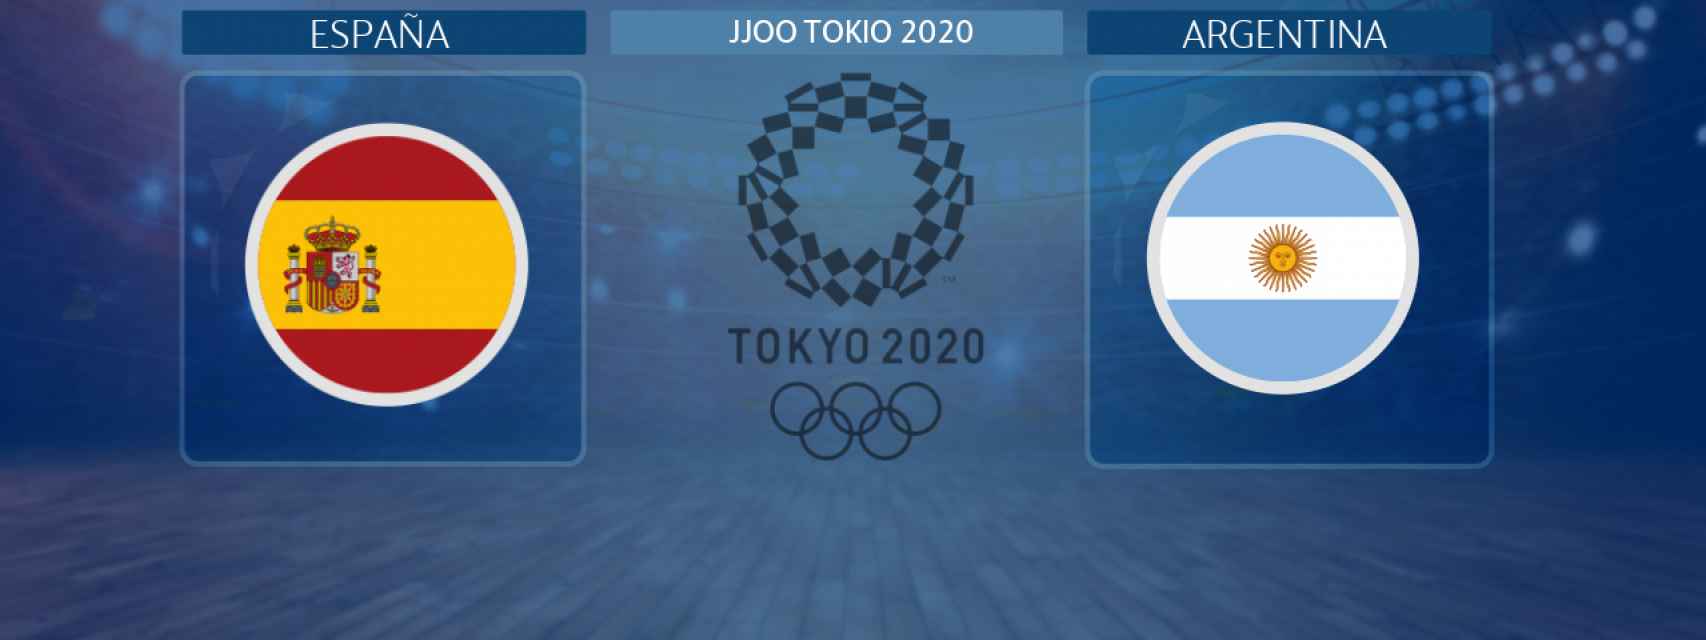 España - Argentina, partido de balonmano masculino de los JJOO Tokio 2020